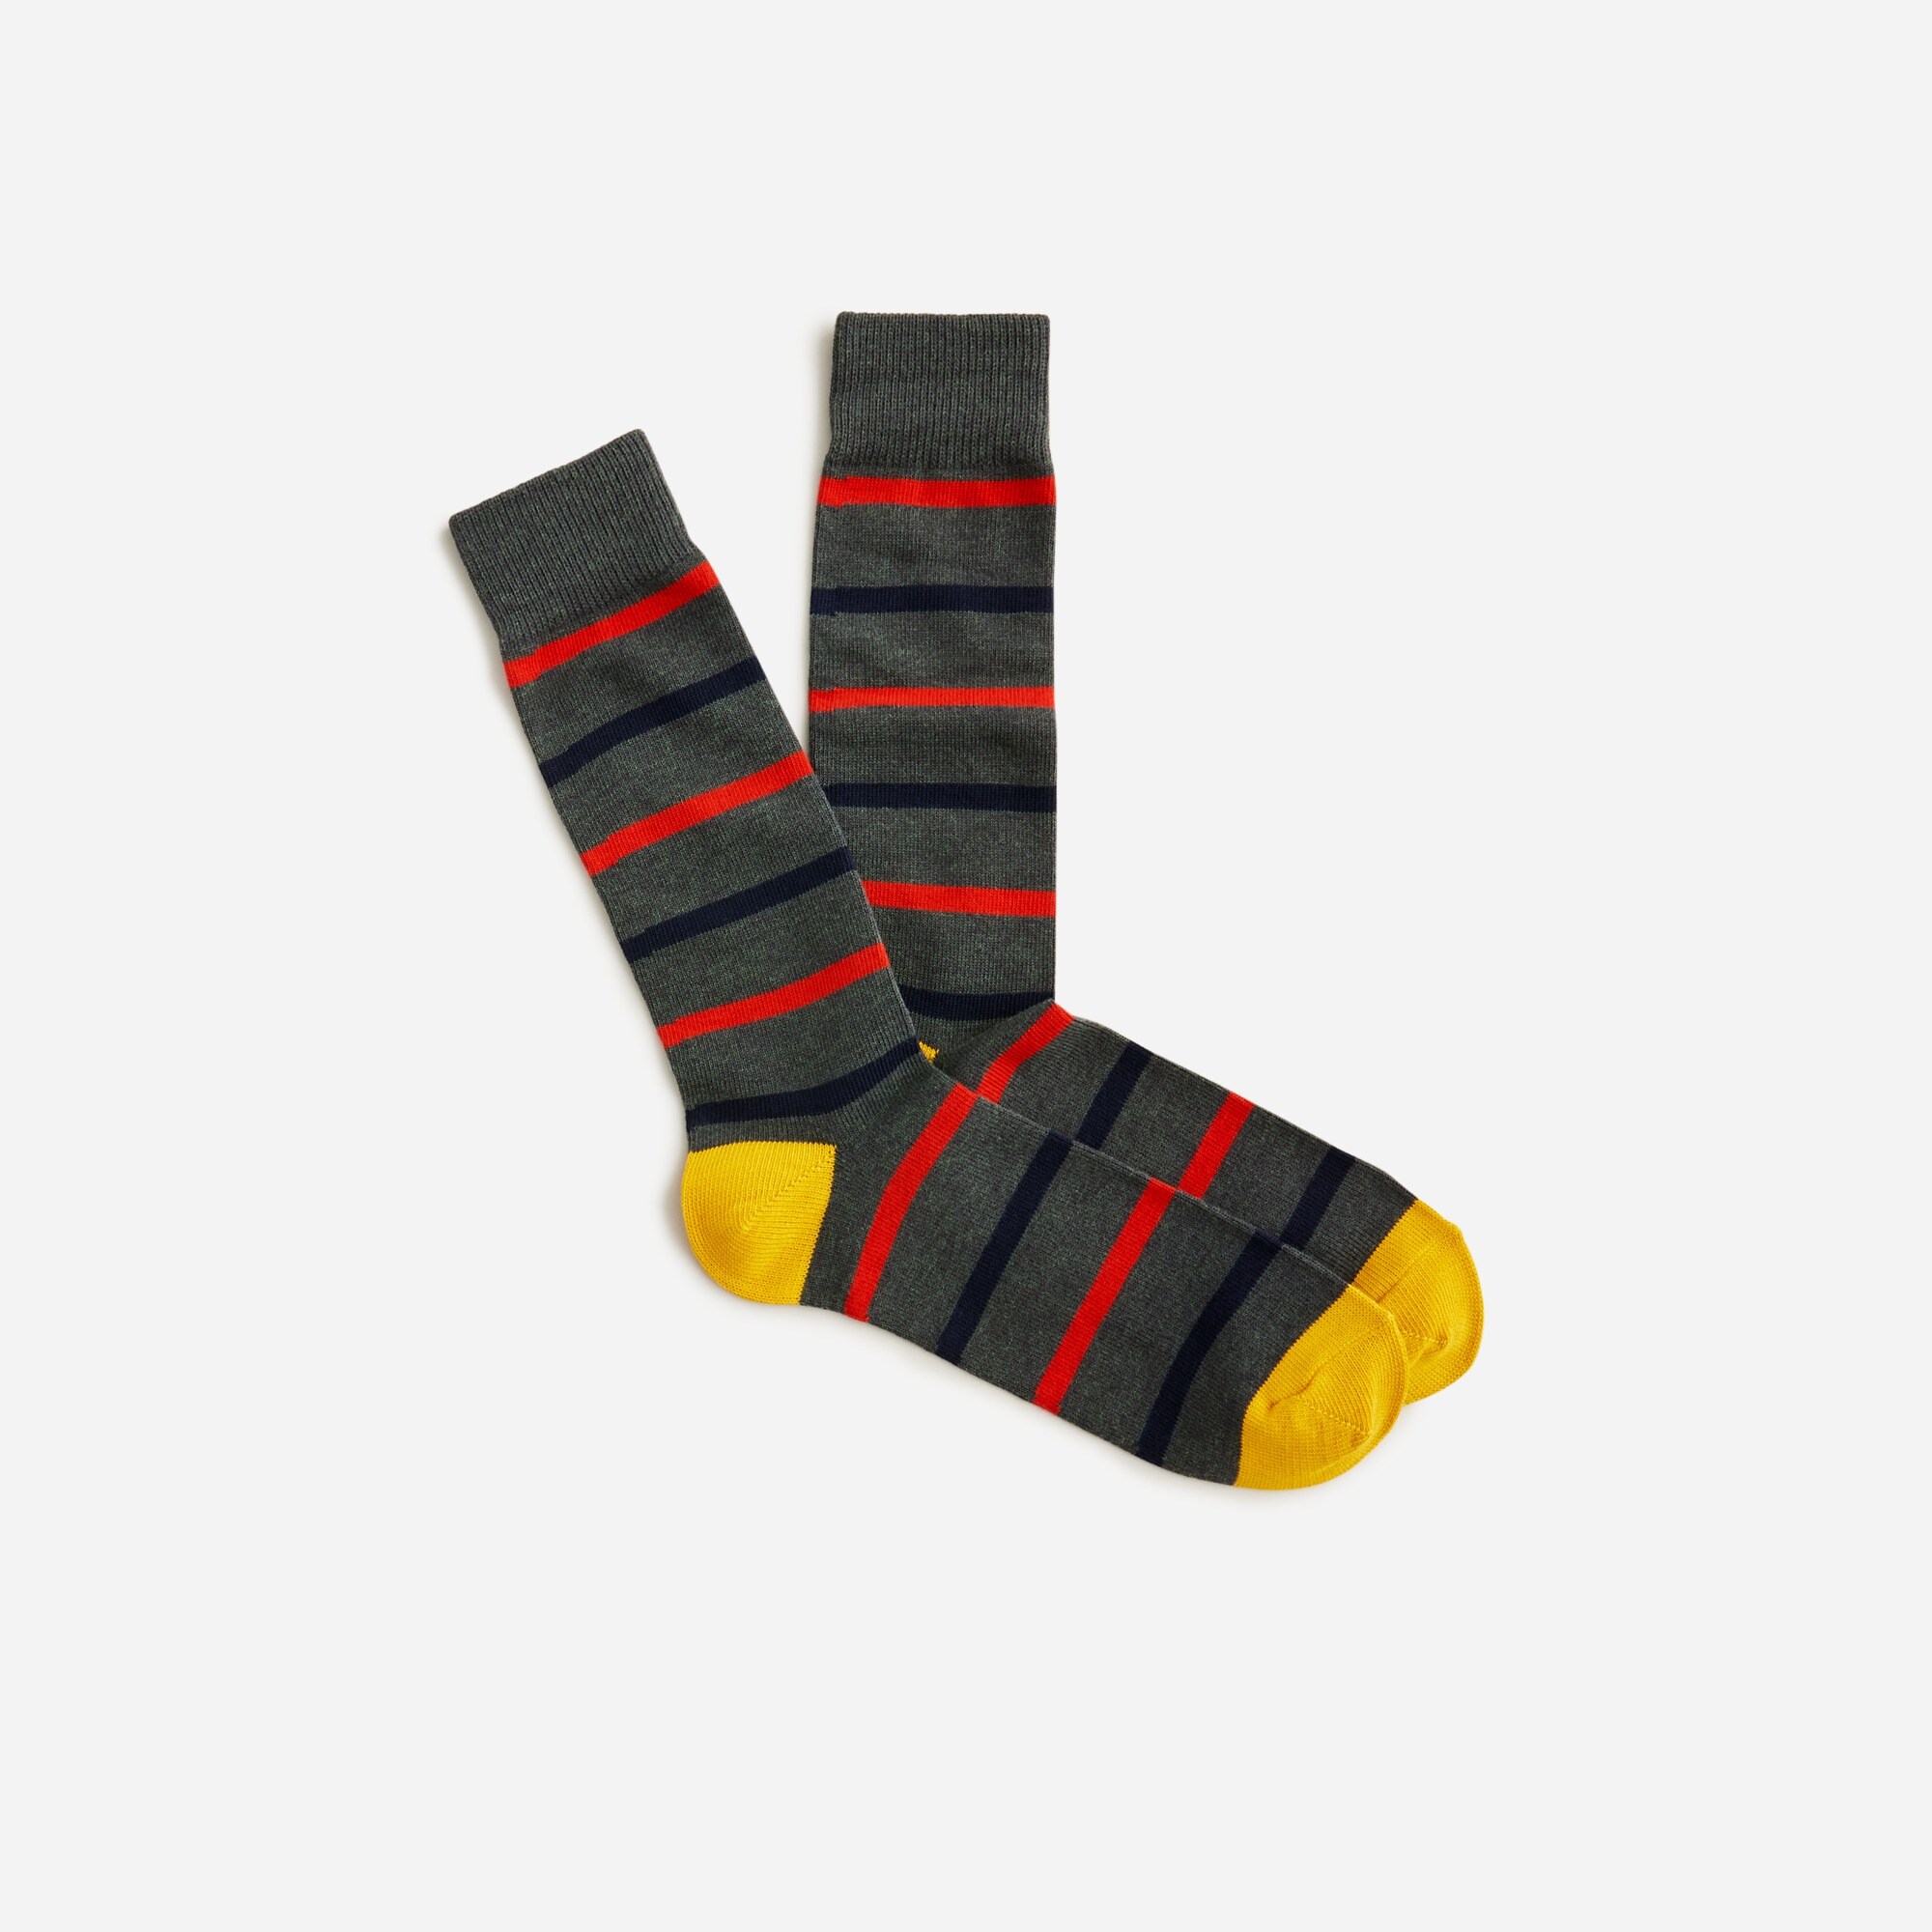  Naval-striped socks